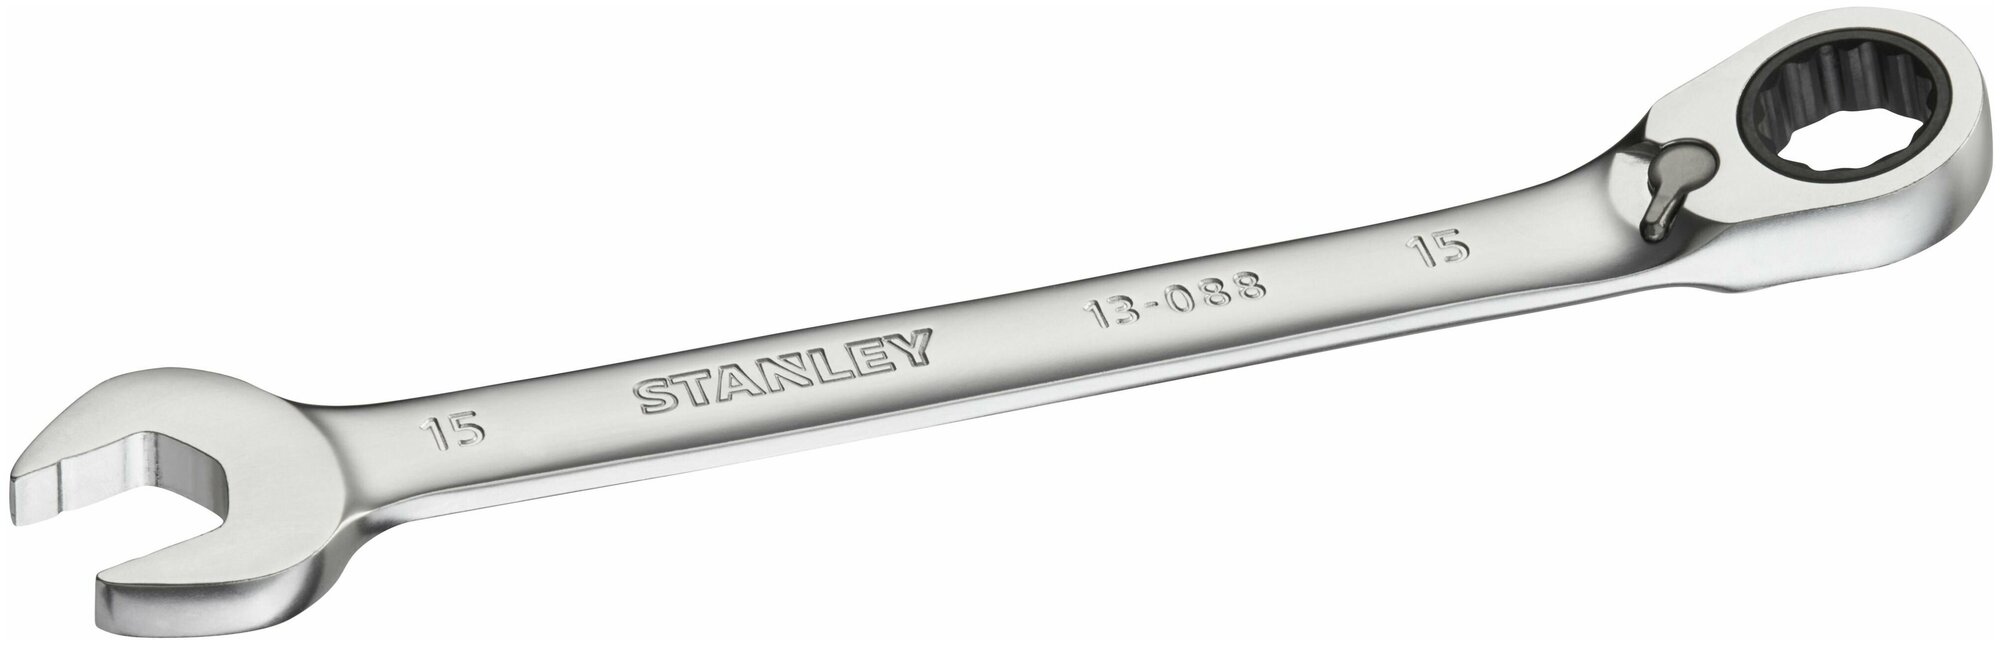 Гаечный ключ с трещоткой Stanley Fatmax, 15 мм - фото №1